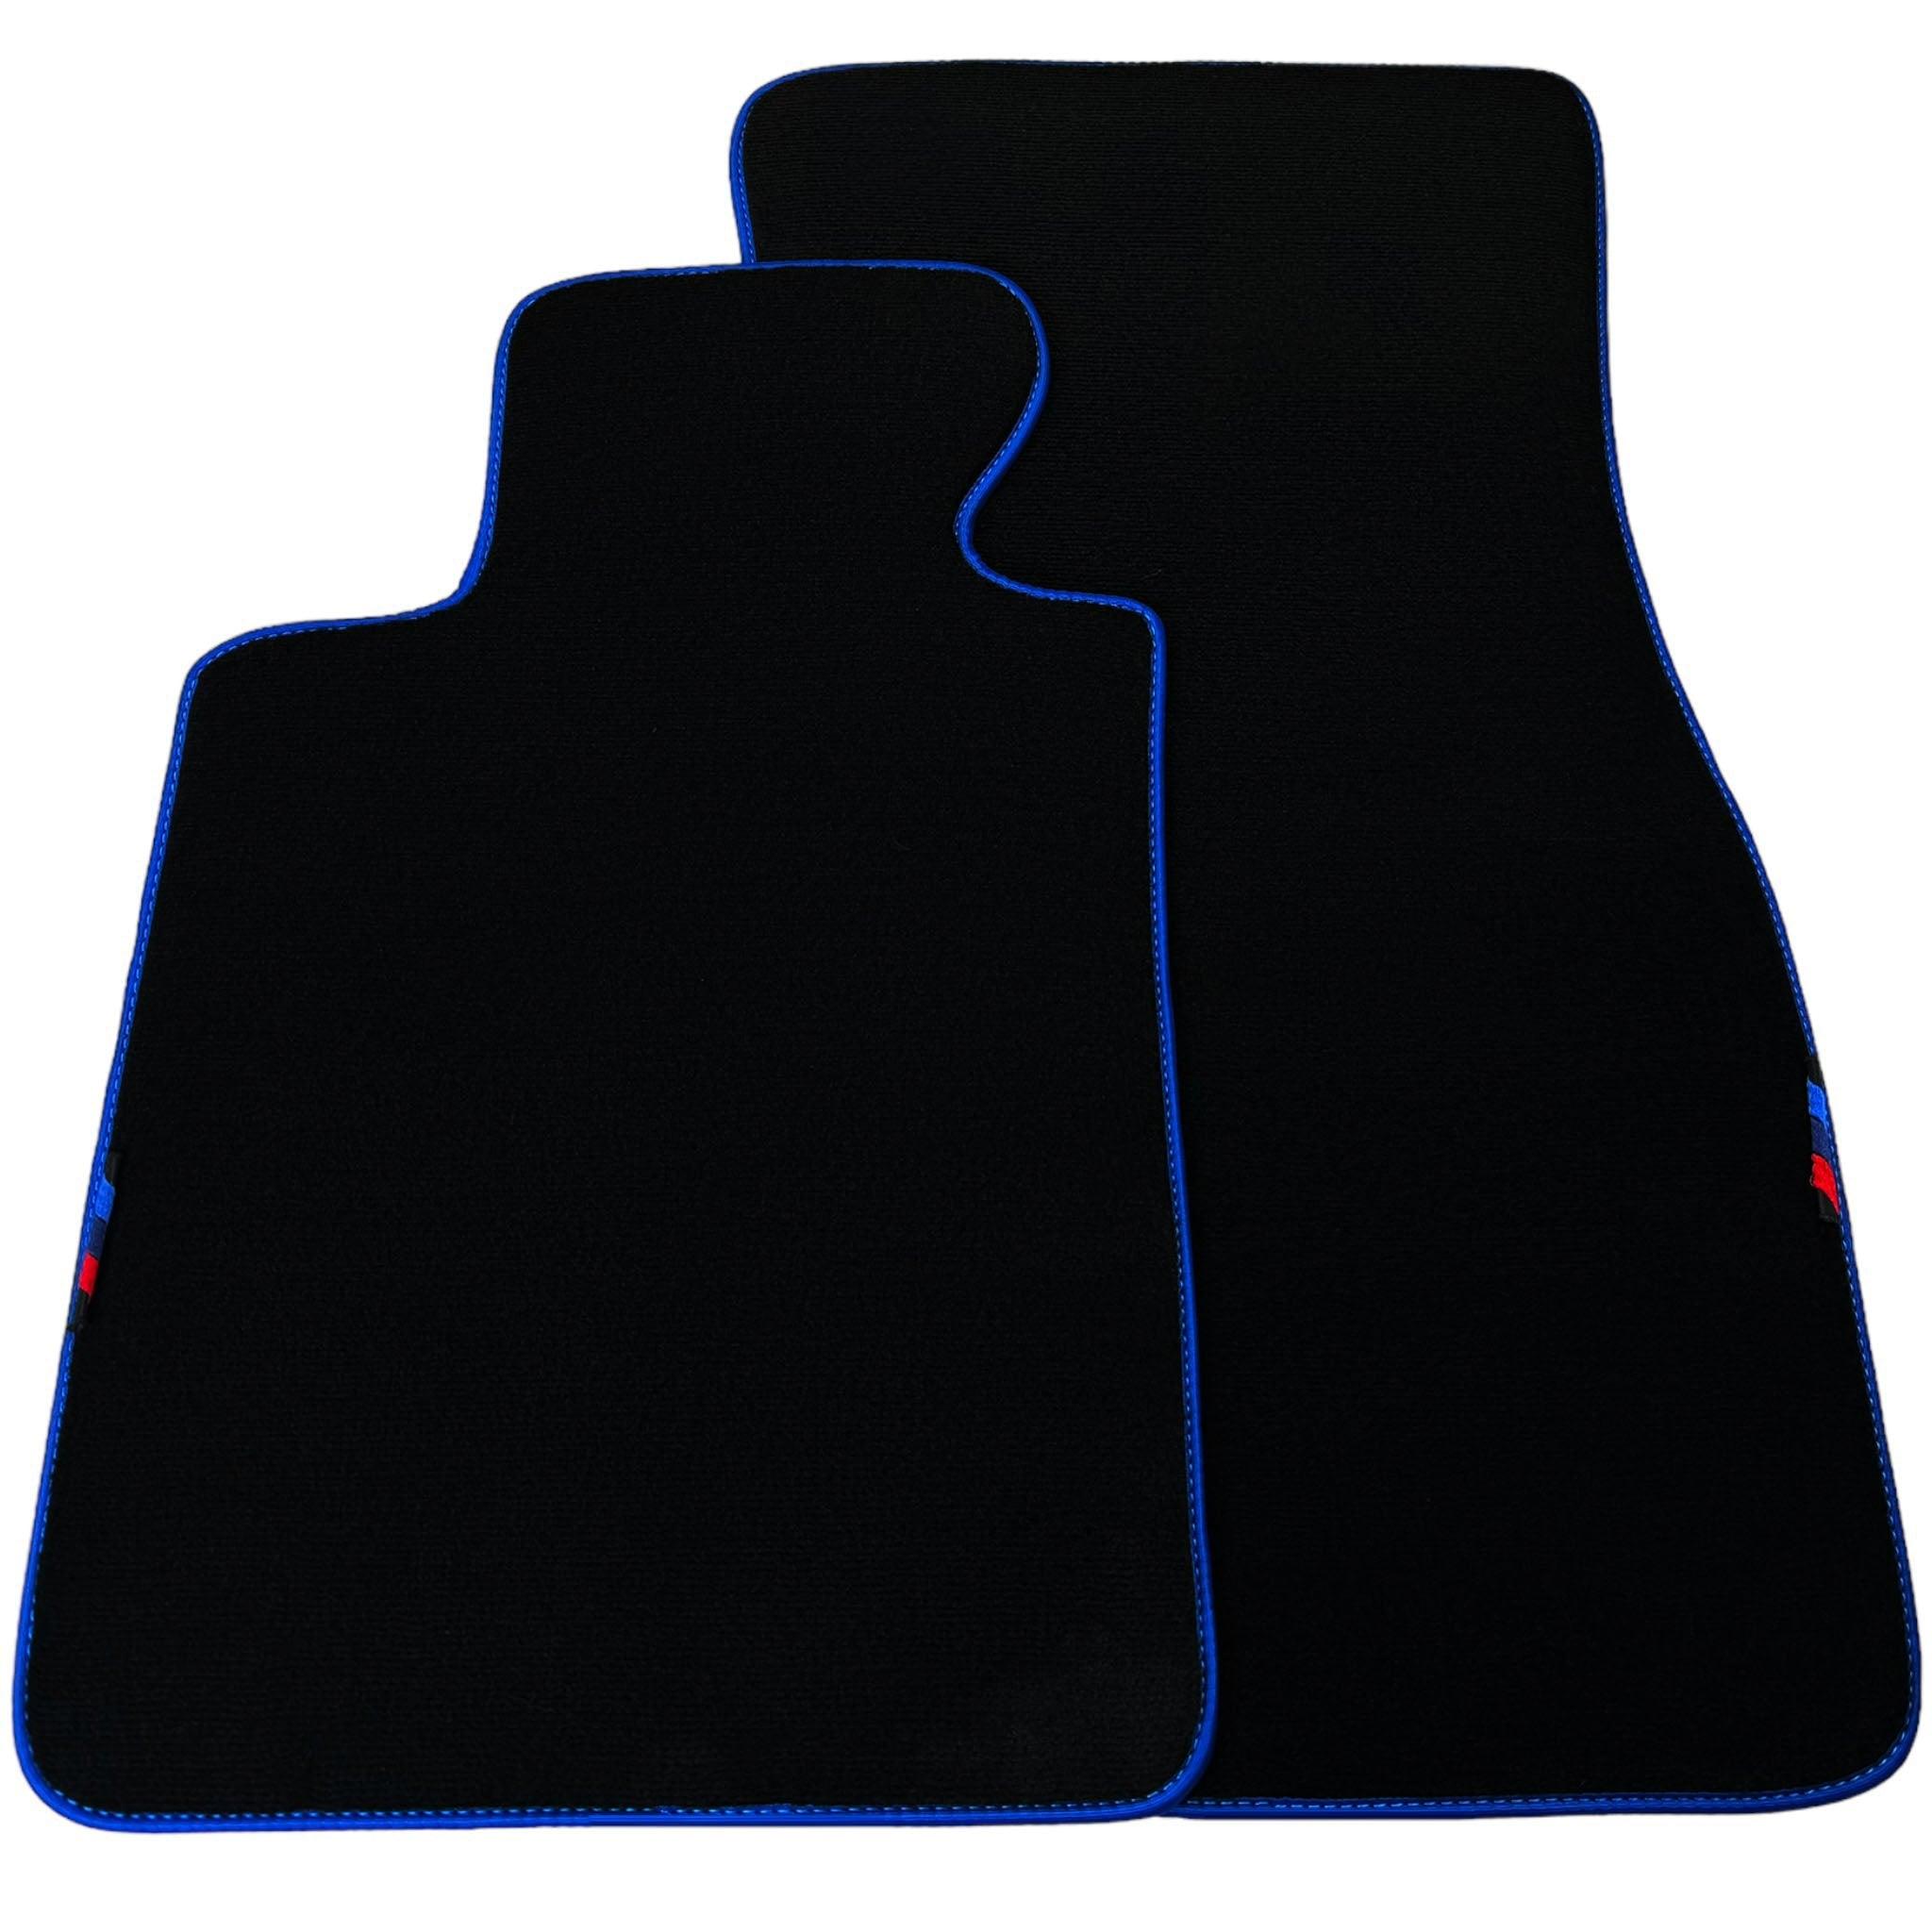 Black Floor Mats For BMW X3 - E83 SUV | Blue Trim